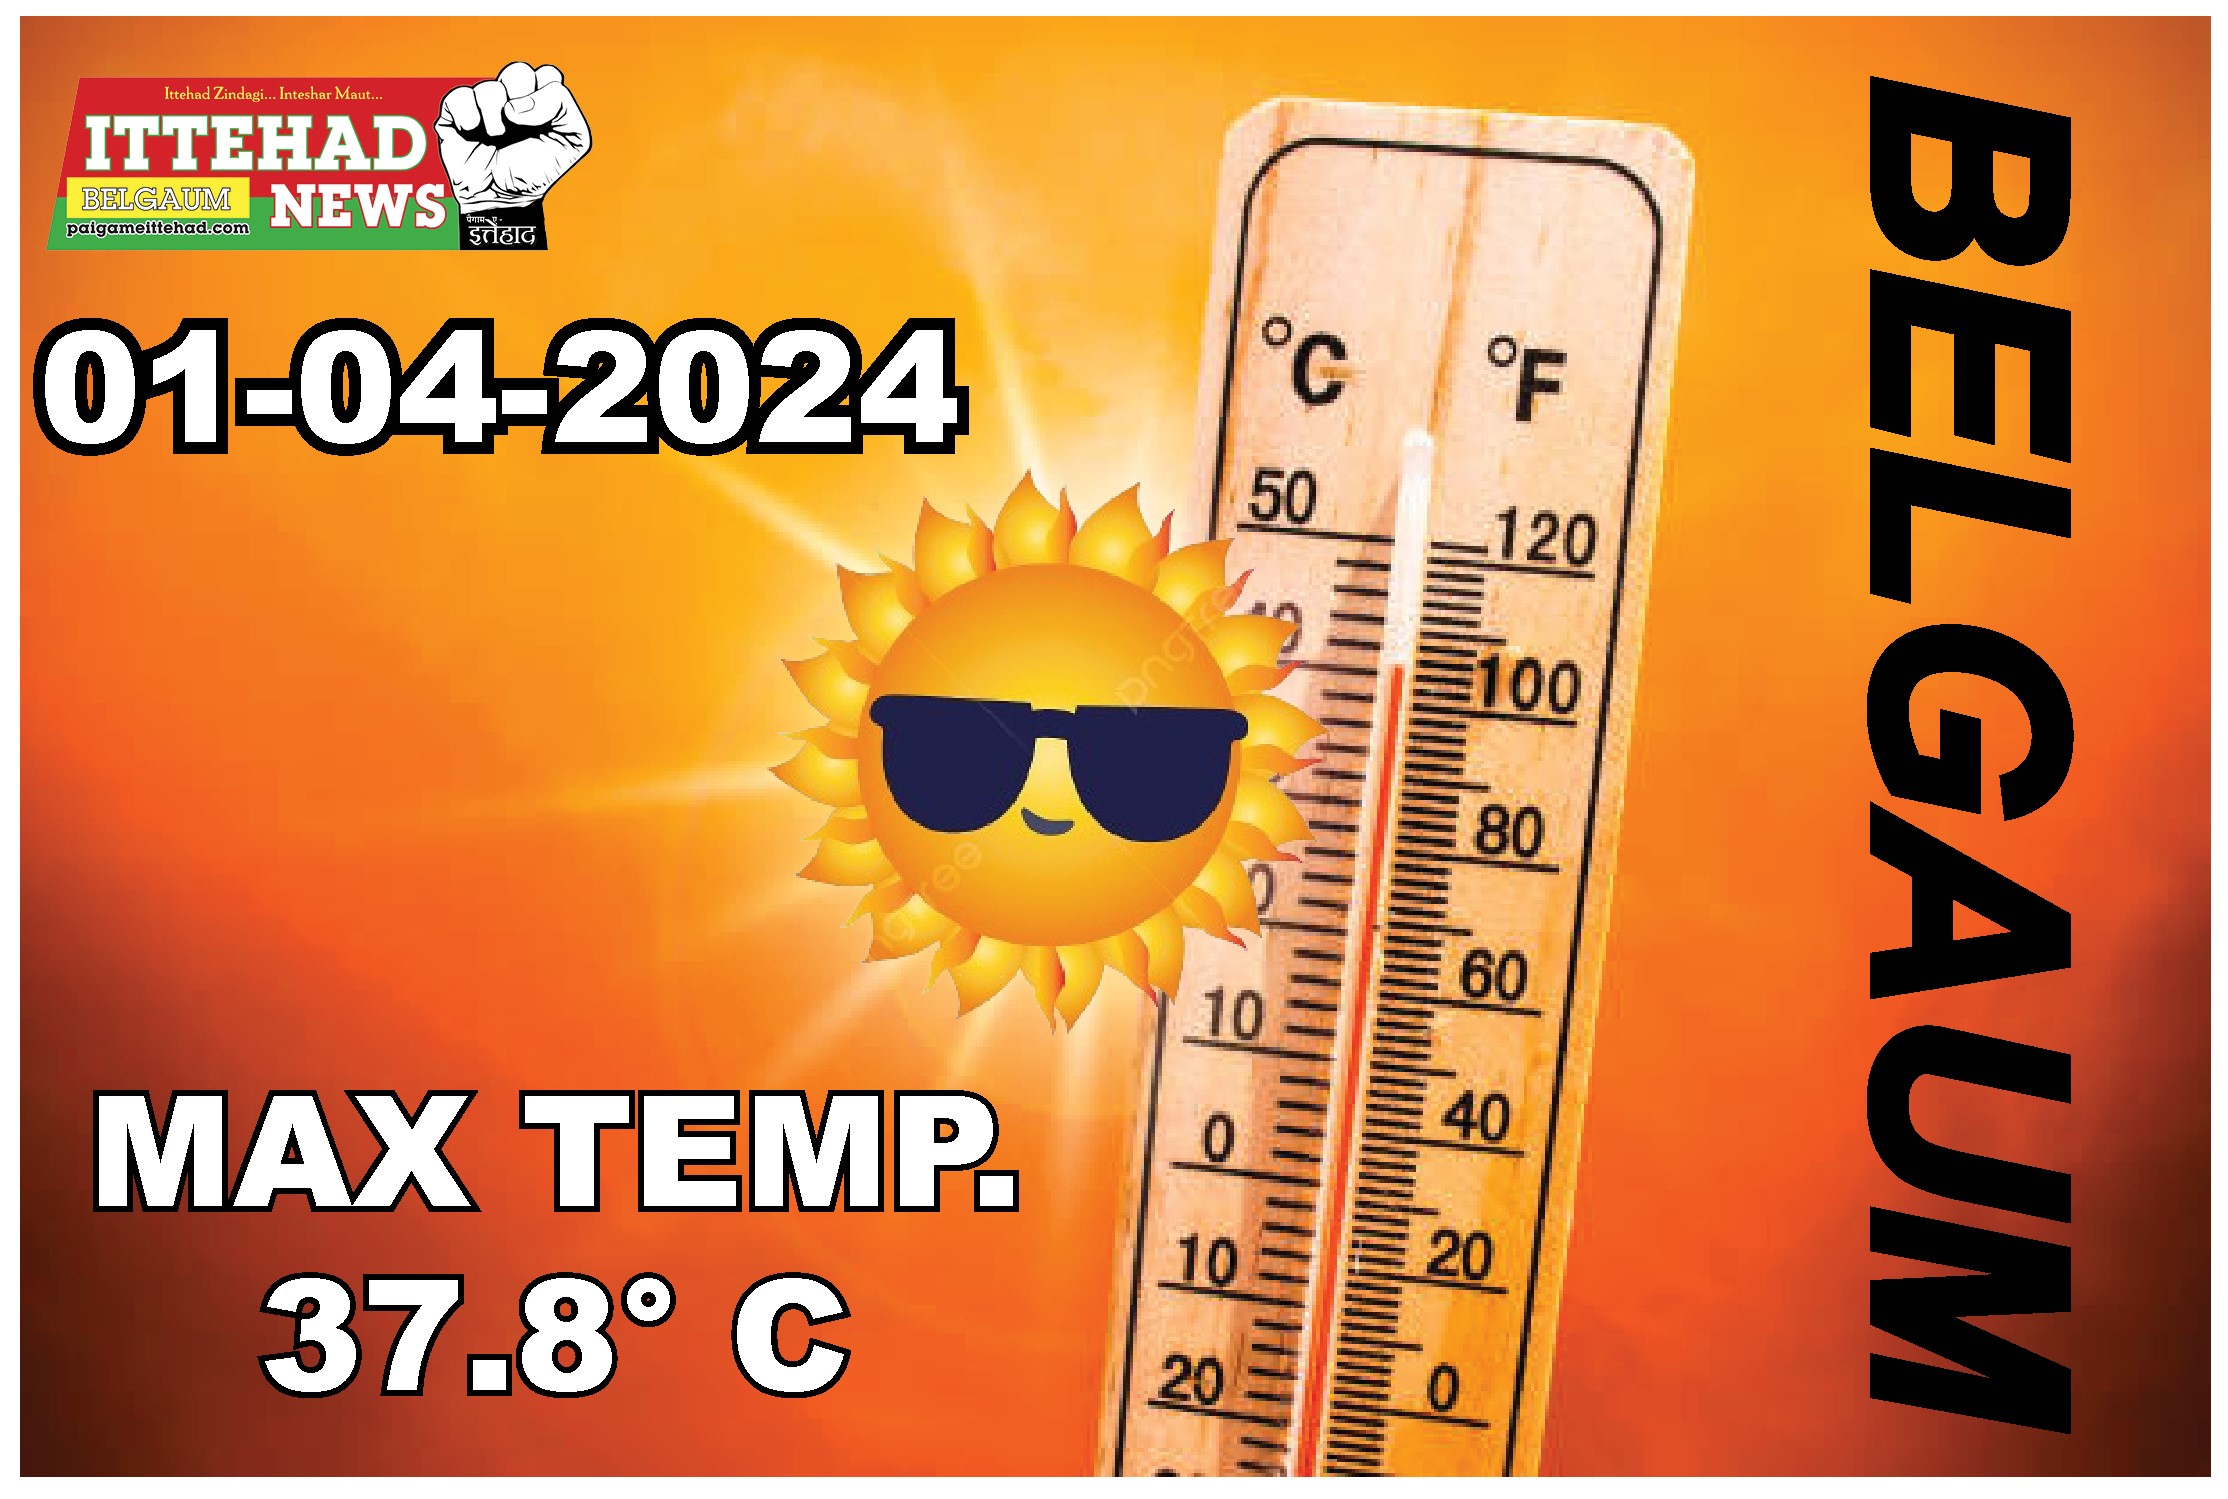 बेलागावी आज के अधिकतम तापमान 37.8 डिग्री सेल्सियस के साथ रिकॉर्ड तोड़ रहा है।